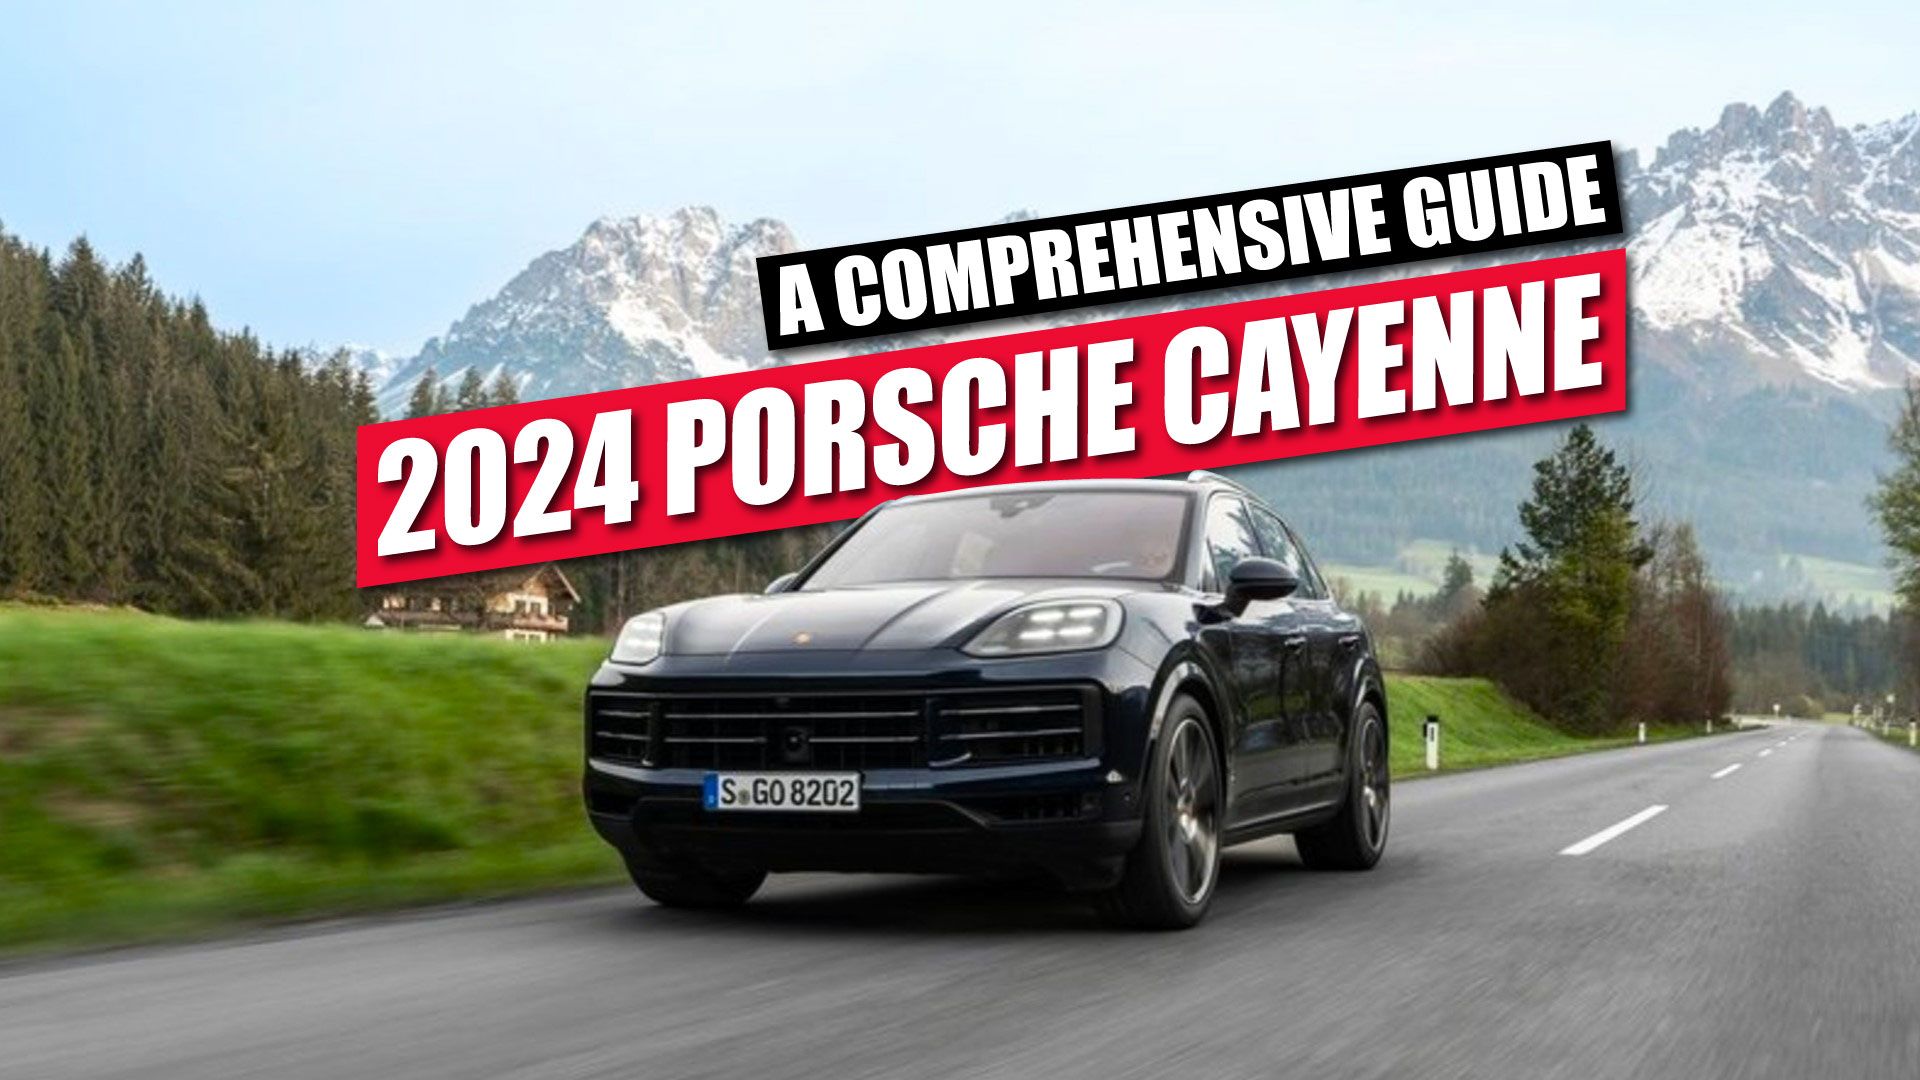 2024 Porsche Cayenne featured image